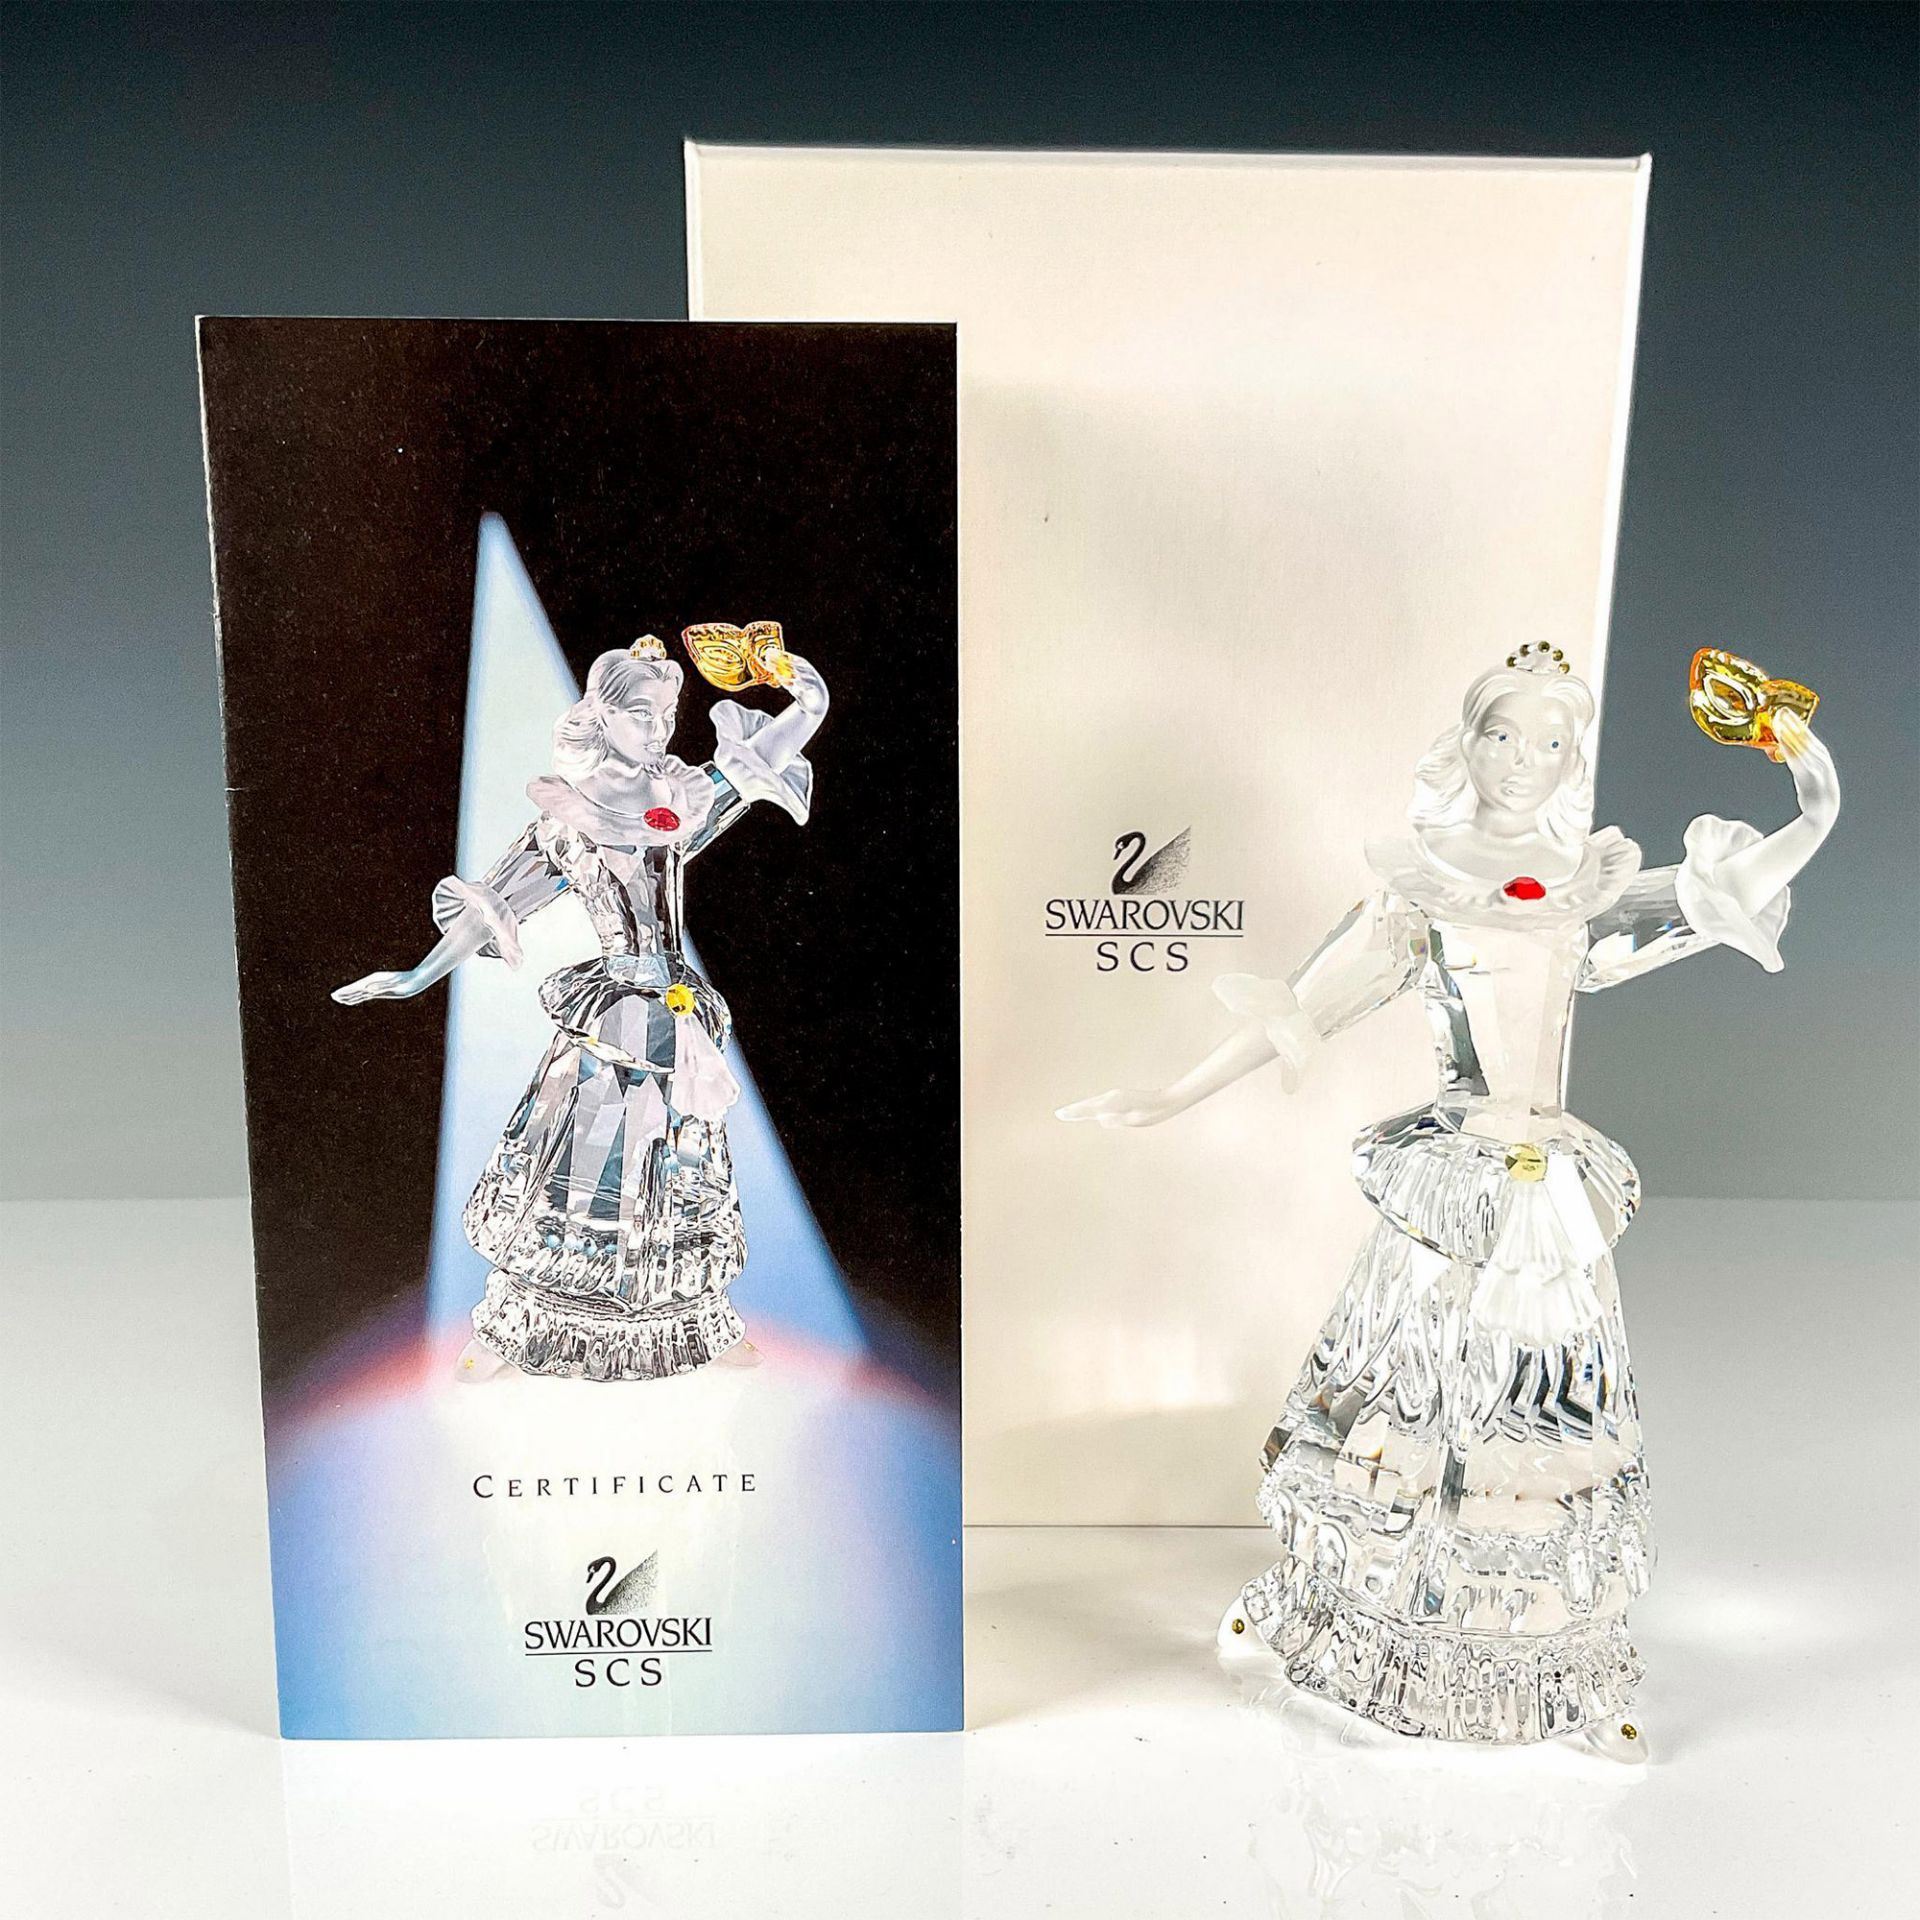 Swarovski Crystal Figurine, Columbine - Image 4 of 4